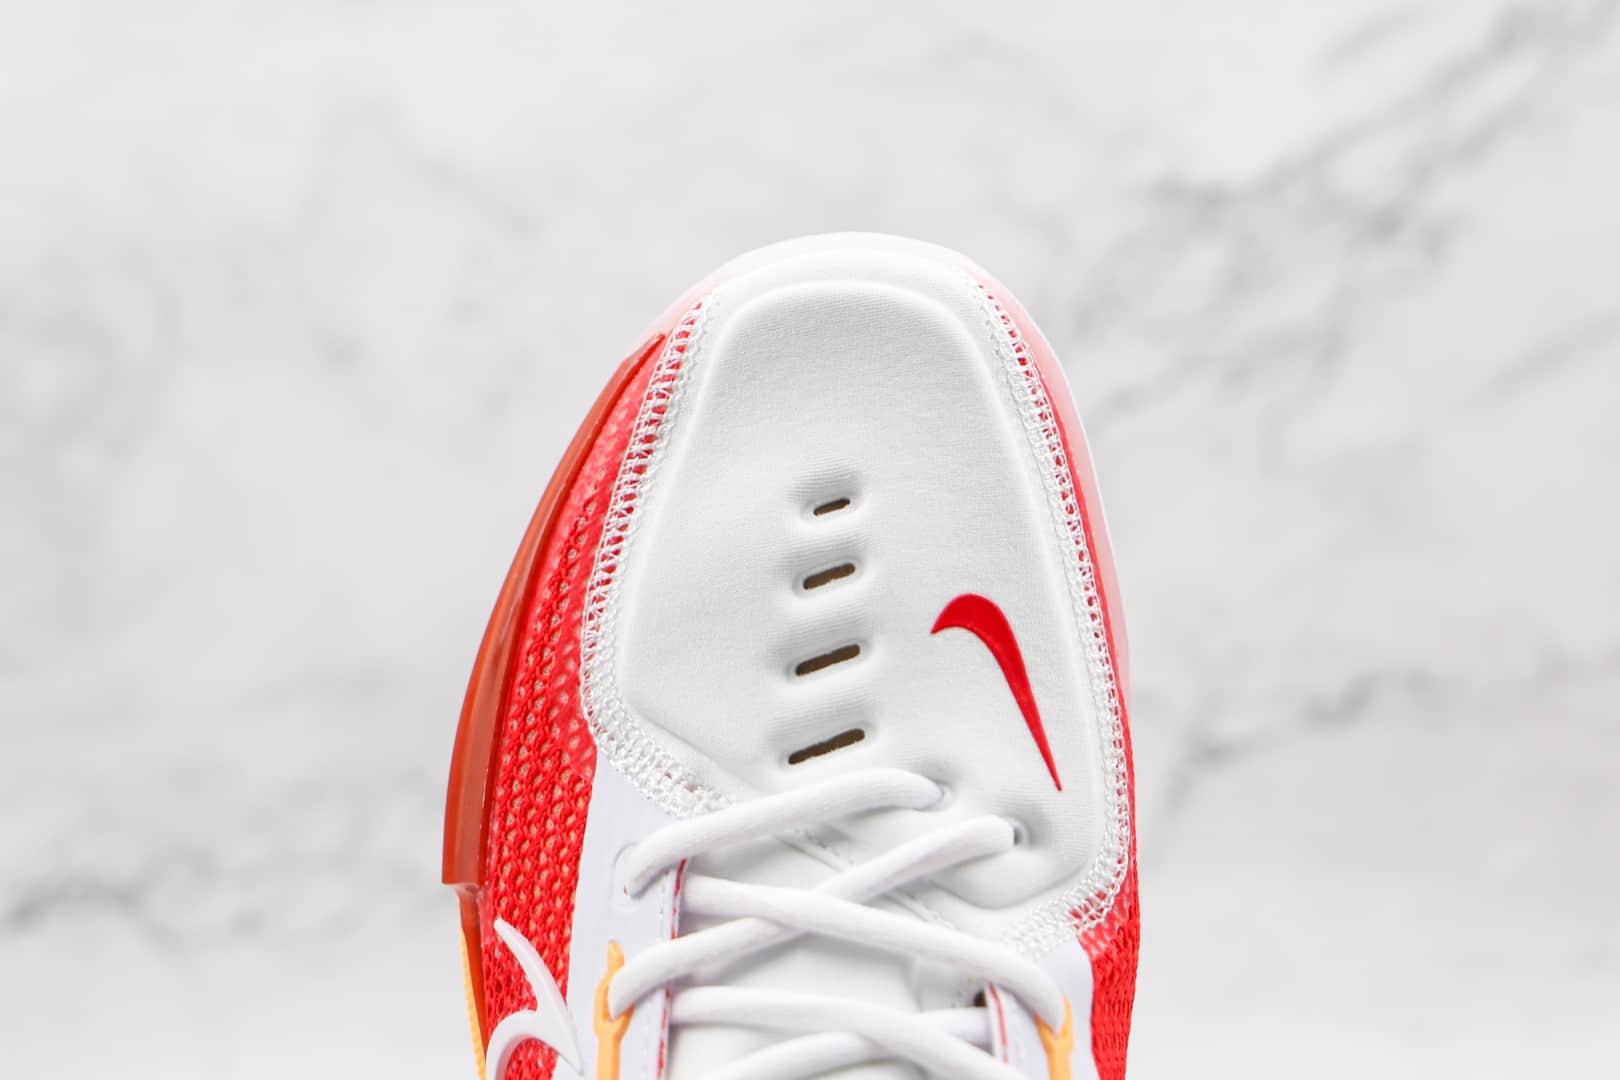 耐克Nike Zoom GT Cut白红色GT篮球鞋 CZ0176-100 - 耐克Zoom GT篮球鞋, 耐克GT篮球鞋, 耐克GT CUT篮球鞋, Nike, CZ0176-100